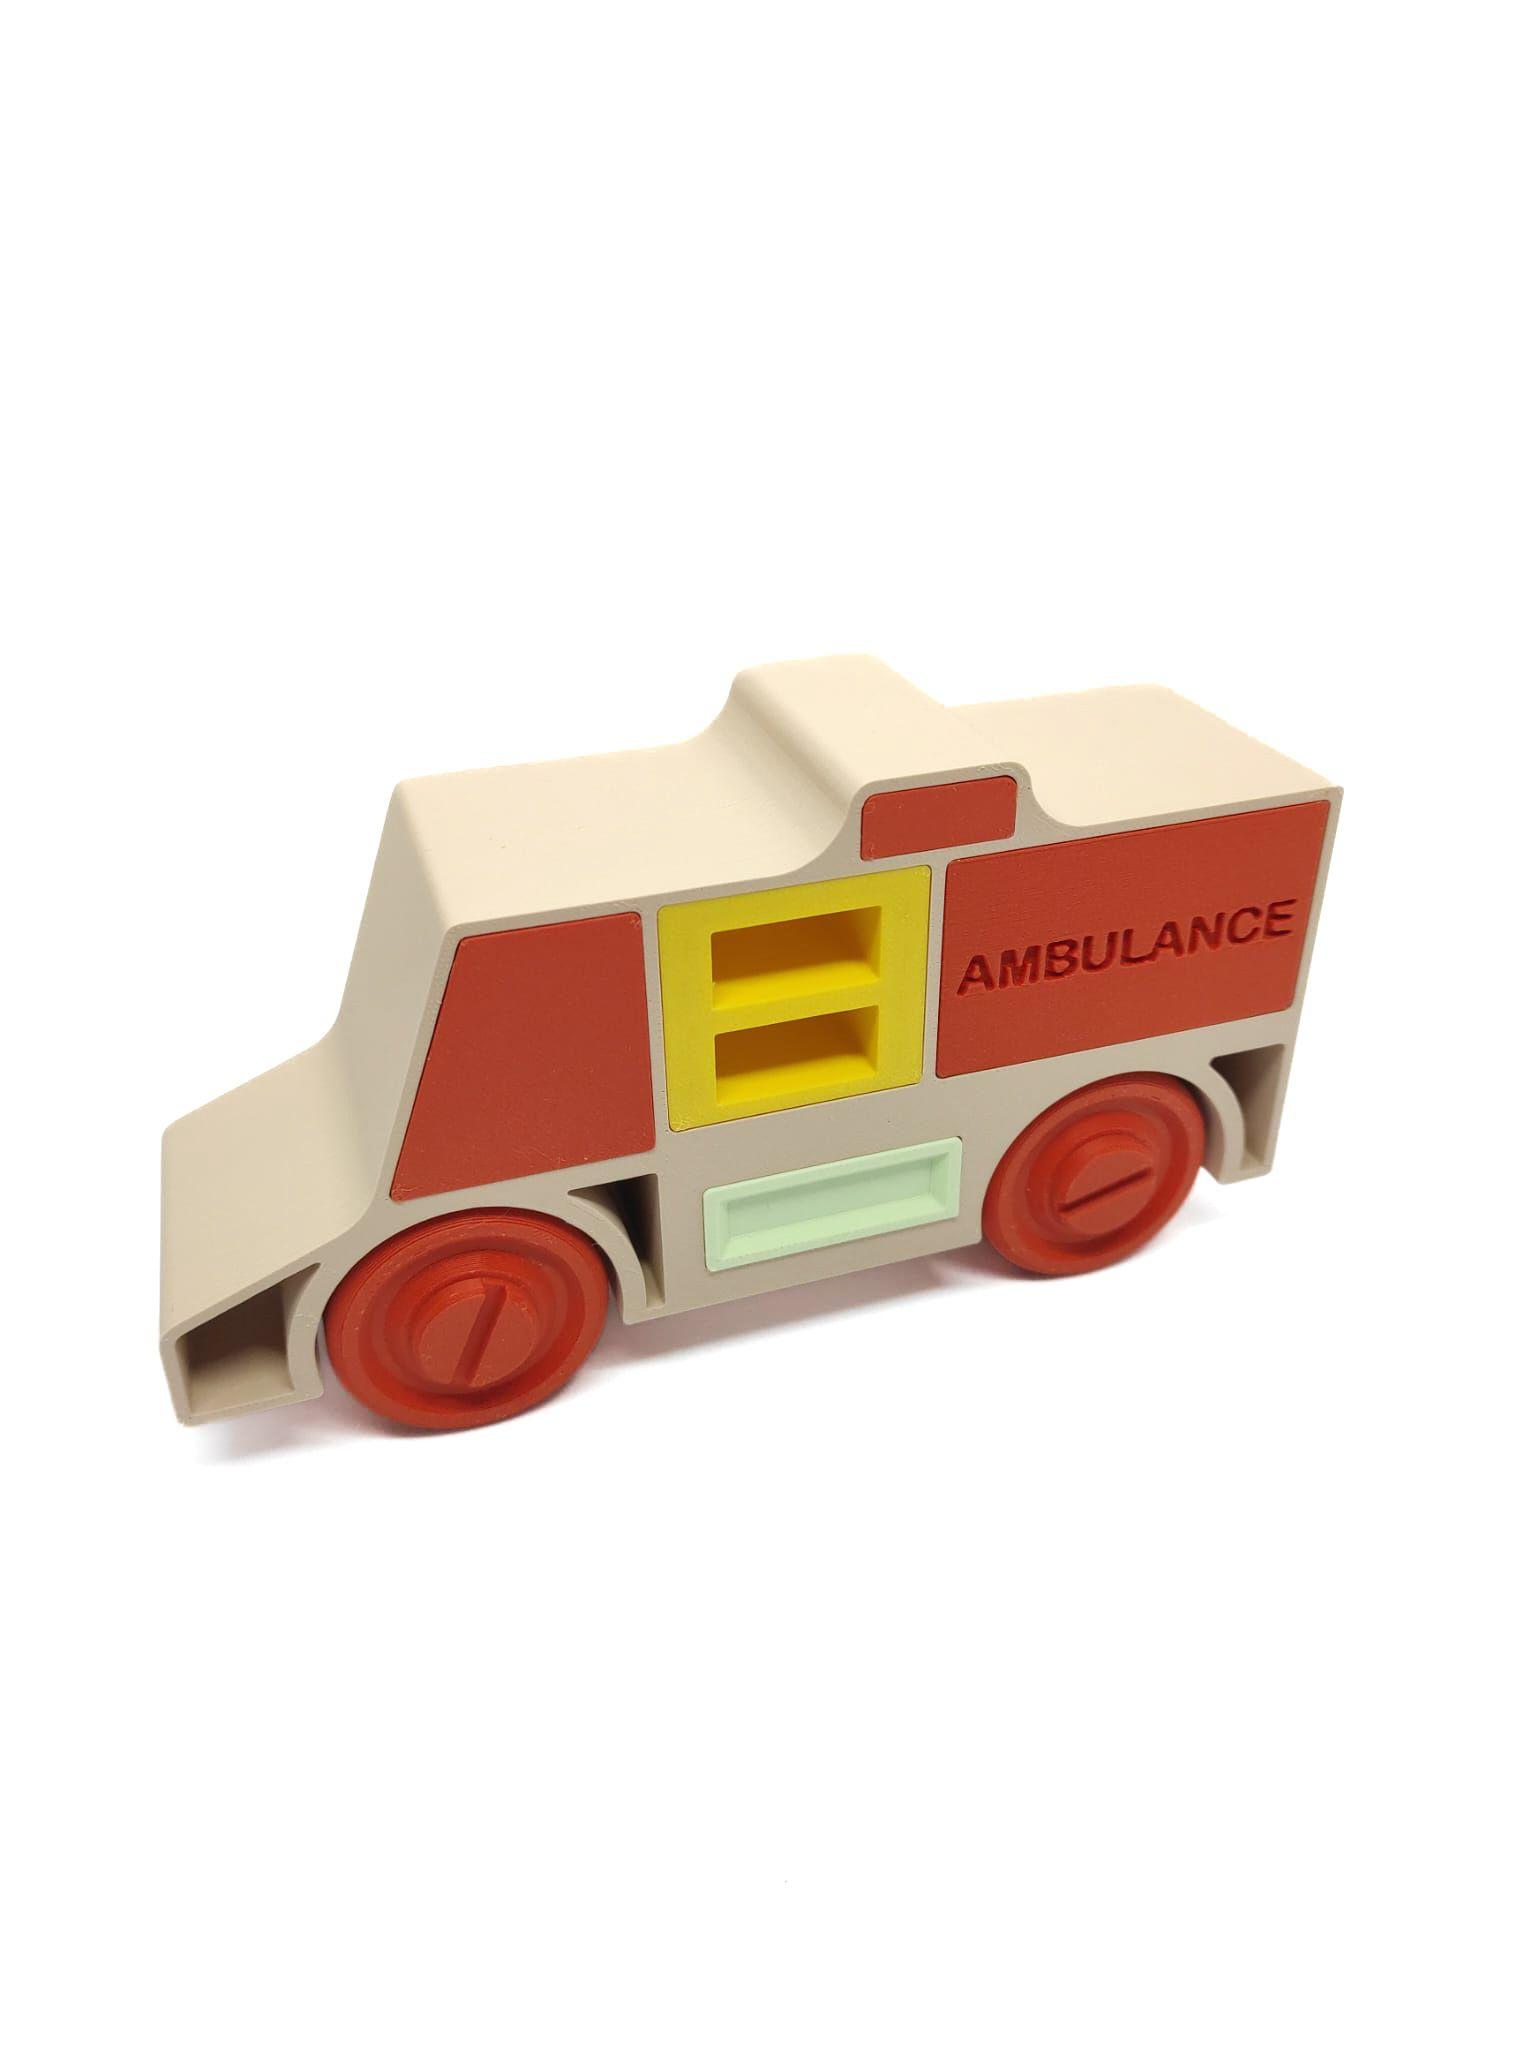 Ambulance 7.5. 3d model